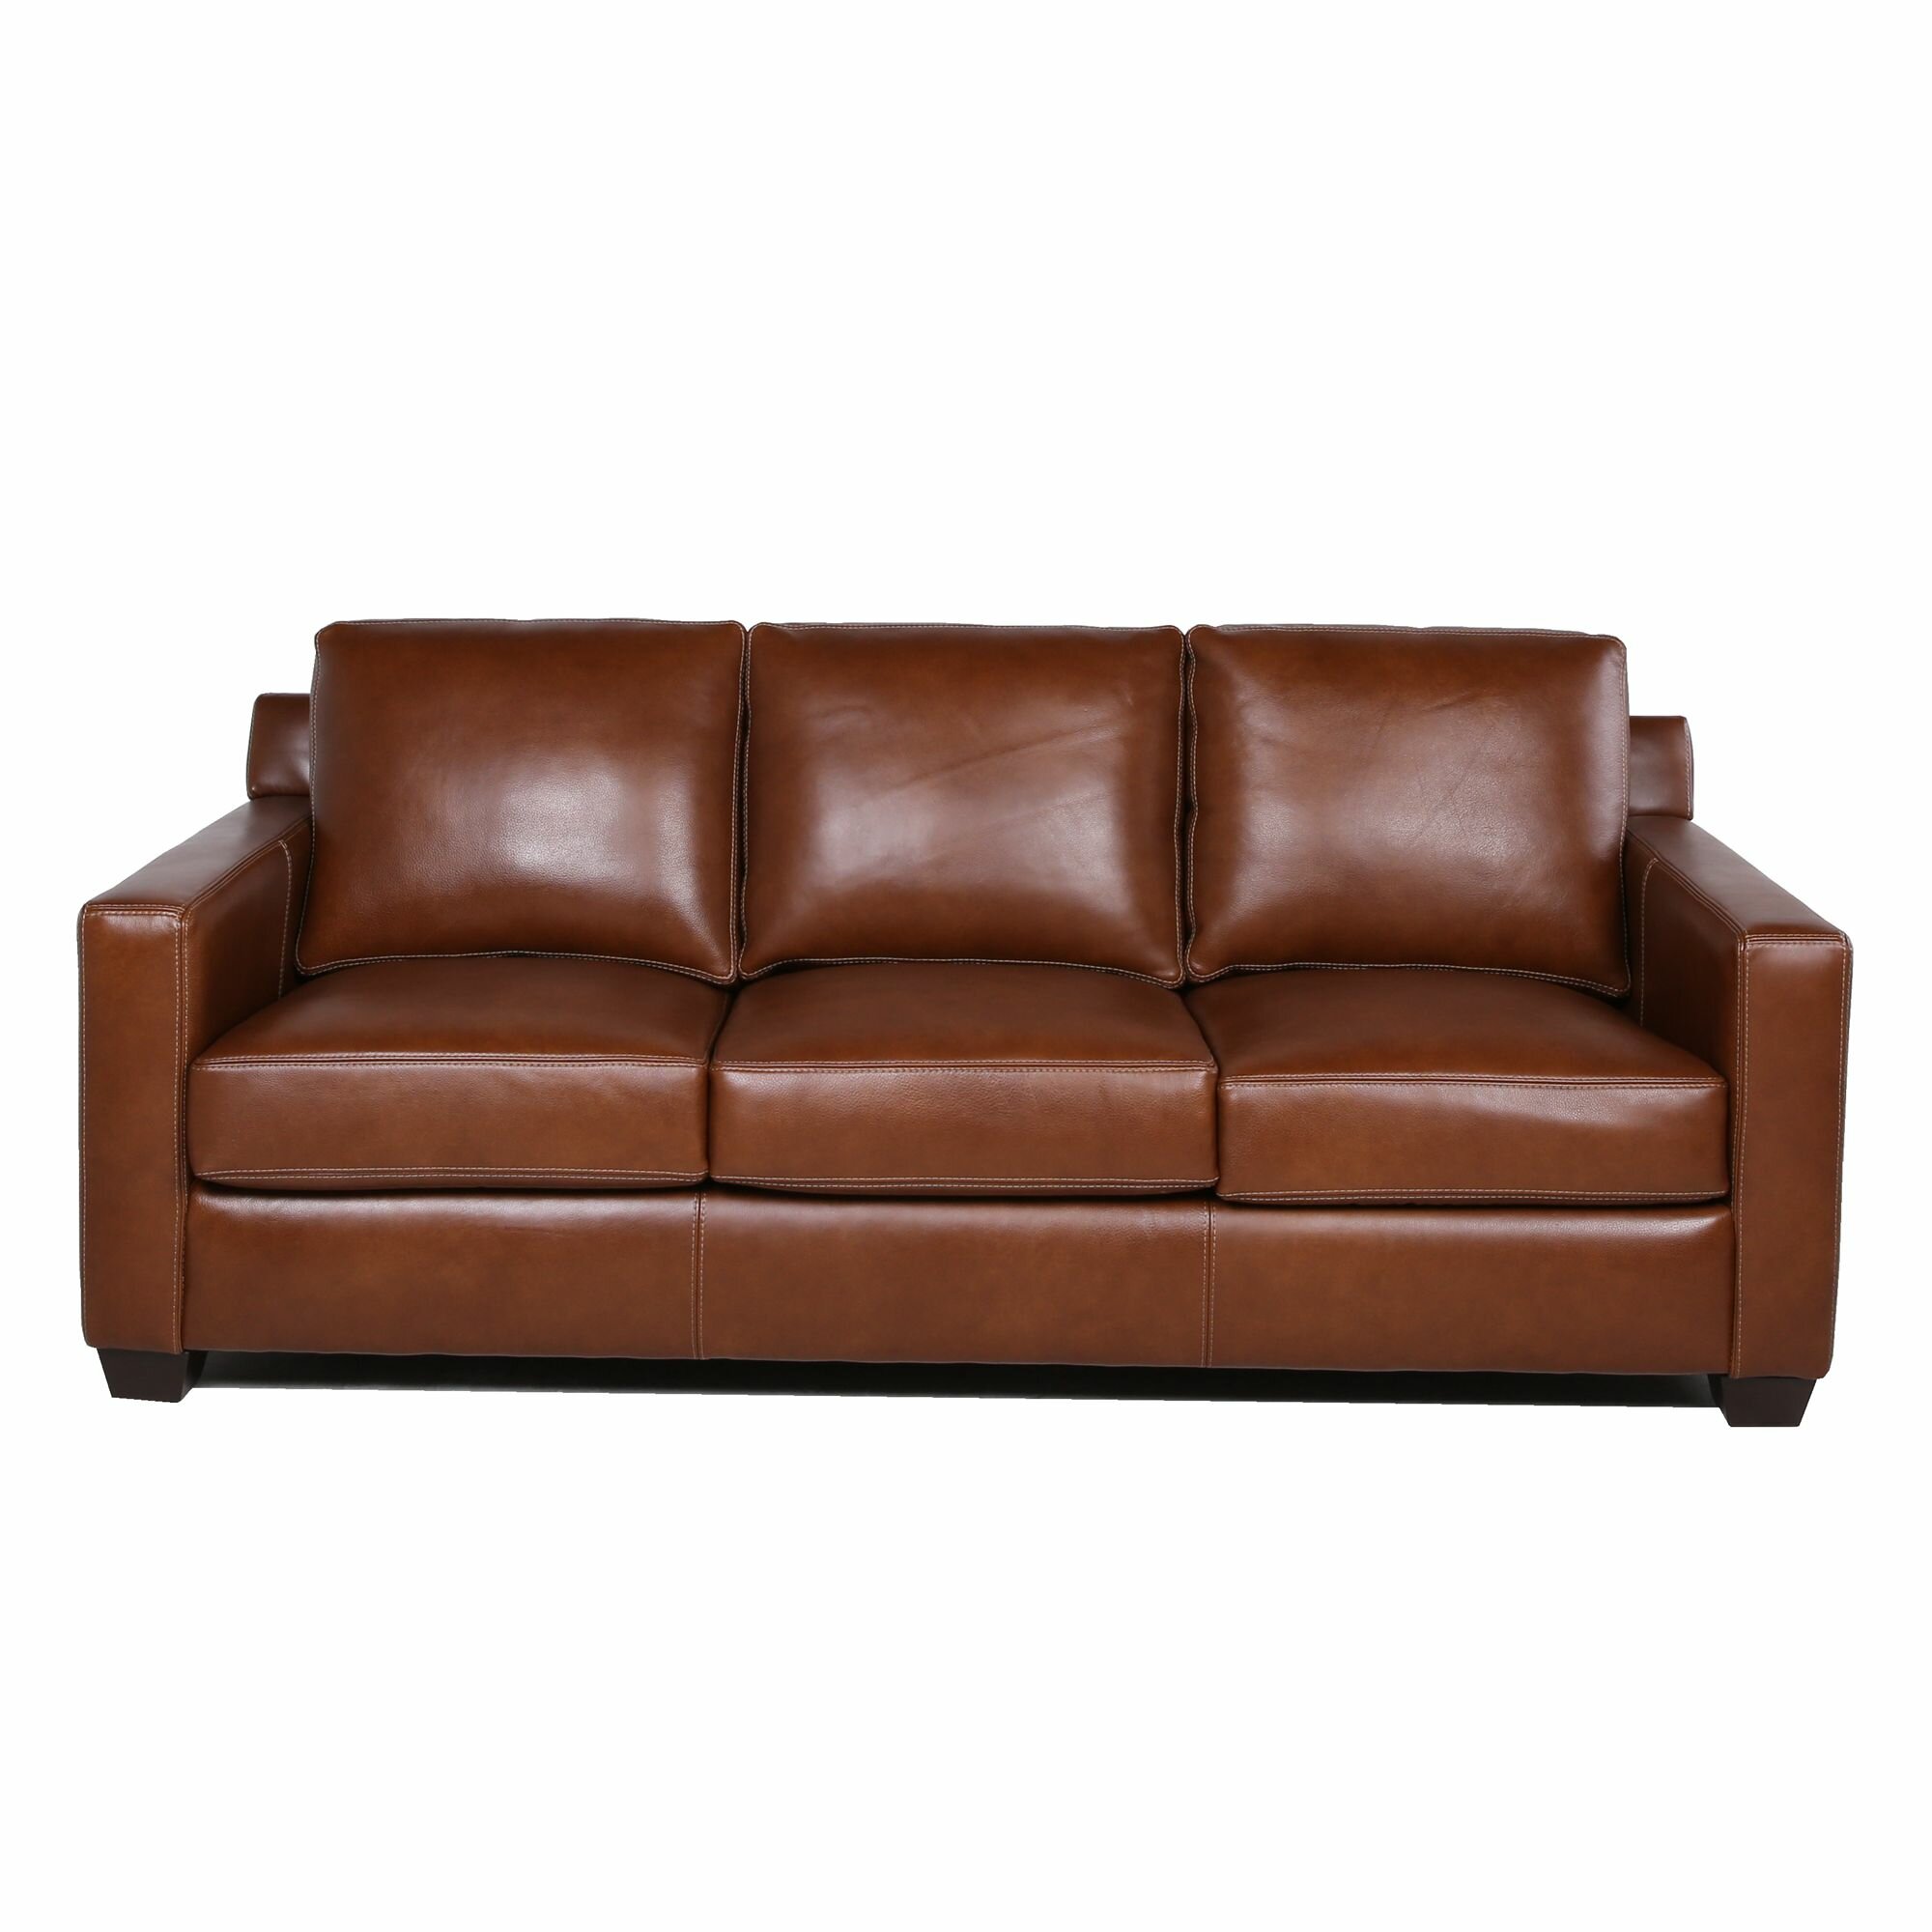 Adda 83.5” Leather Match Square Arm Sofa